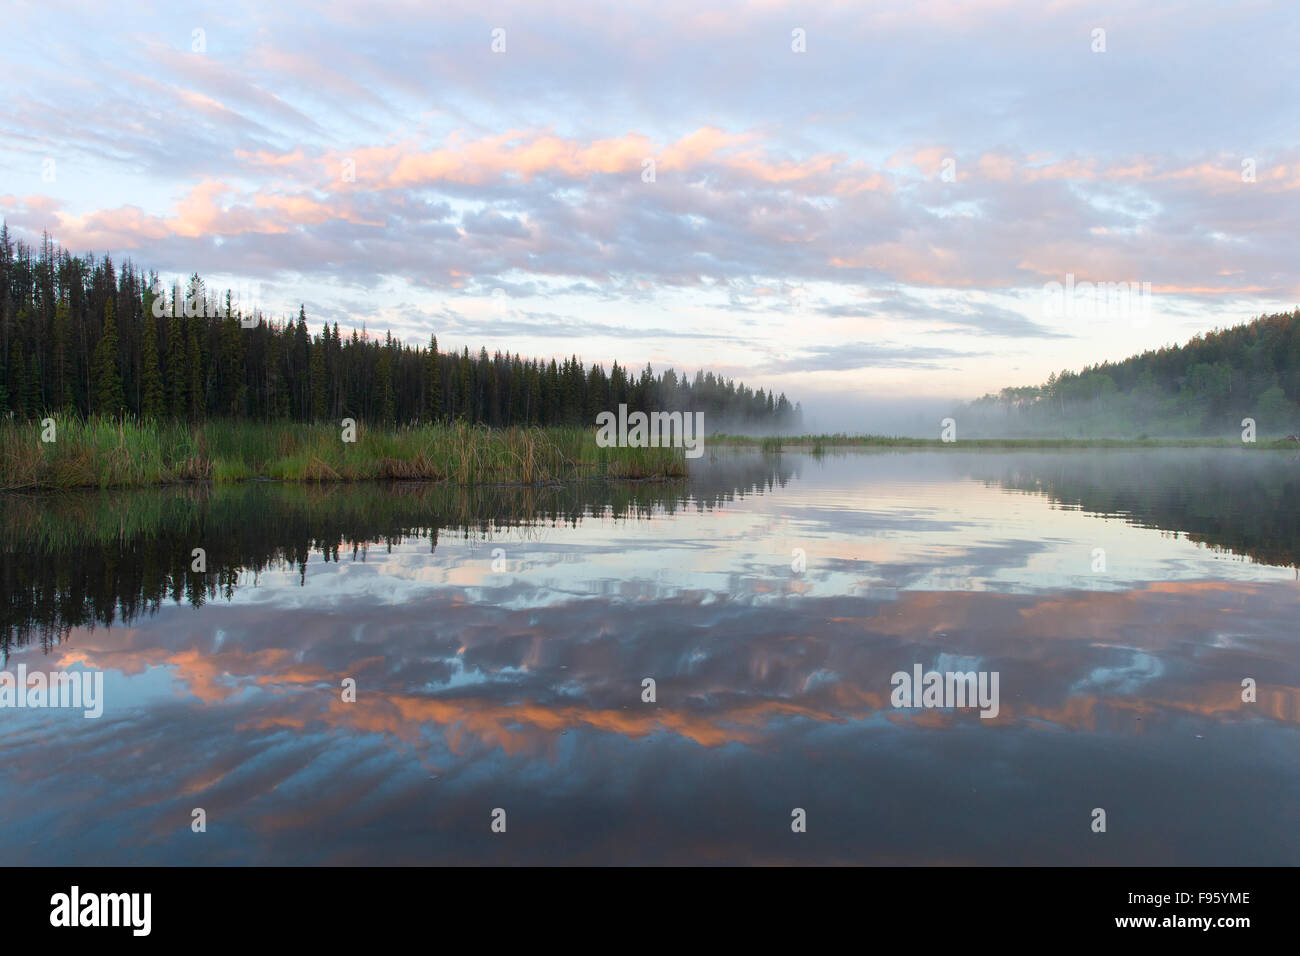 Misty sunrise, Lac Le Jeune, British Columbia. Stock Photo